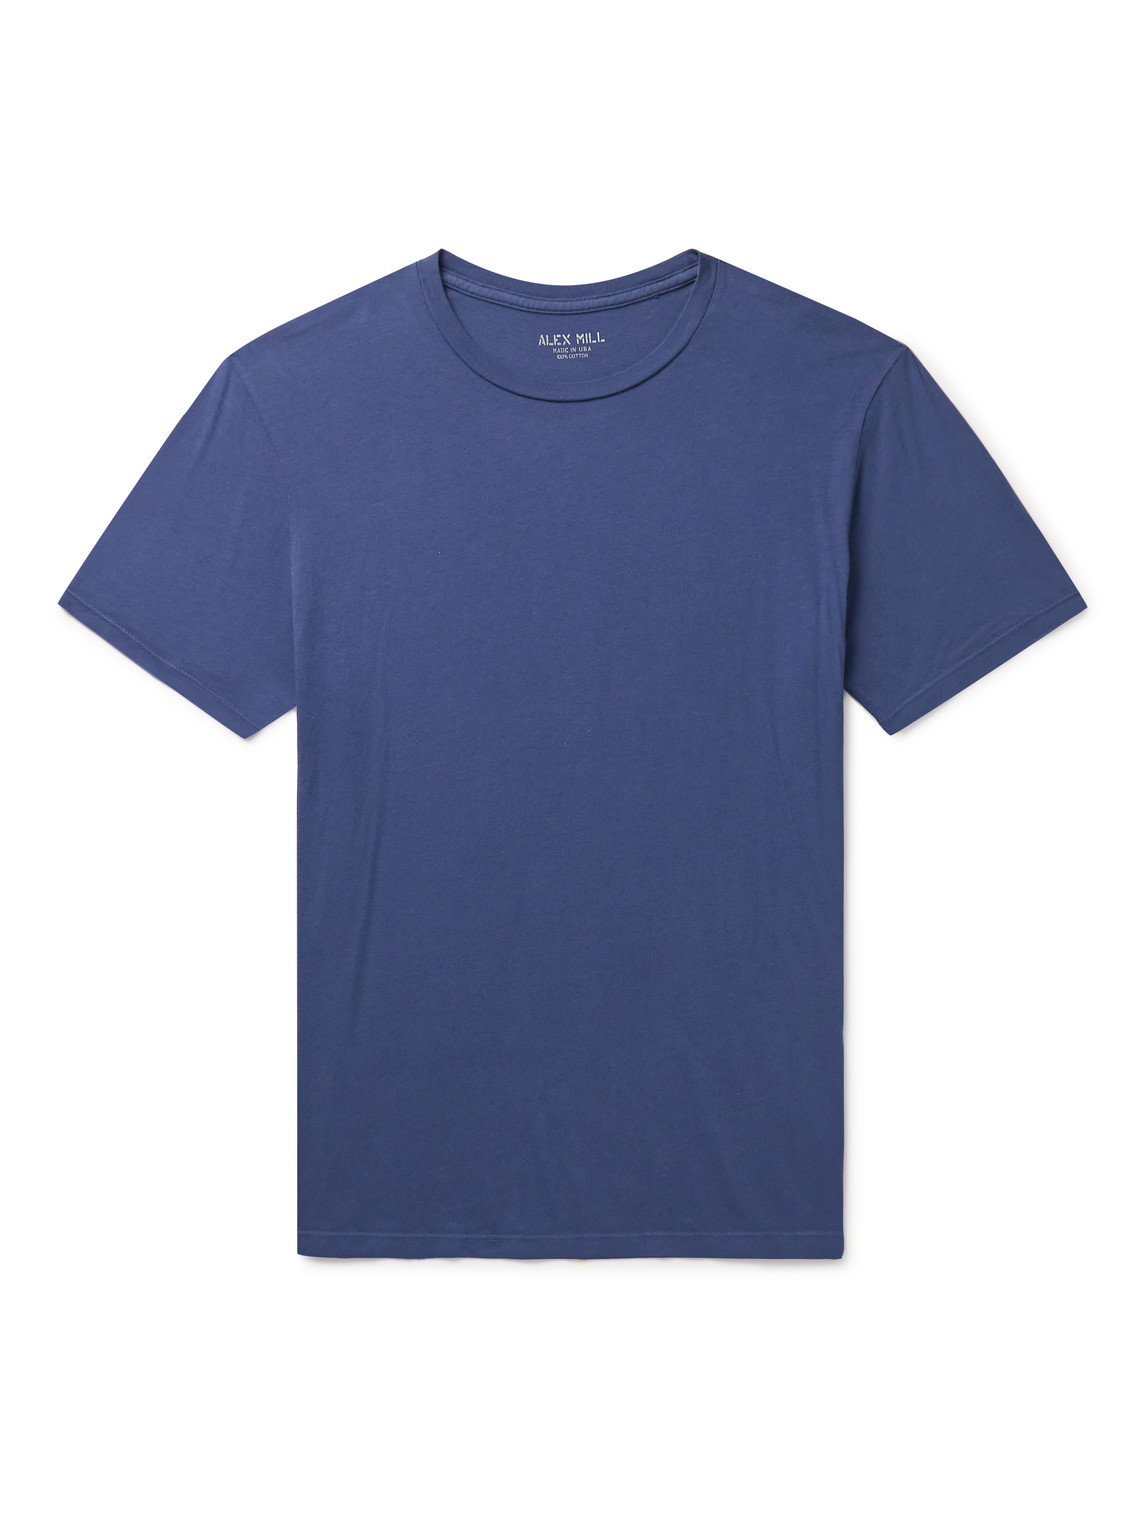 Alex Mill Mercer Cotton-jersey T-shirt In Blue